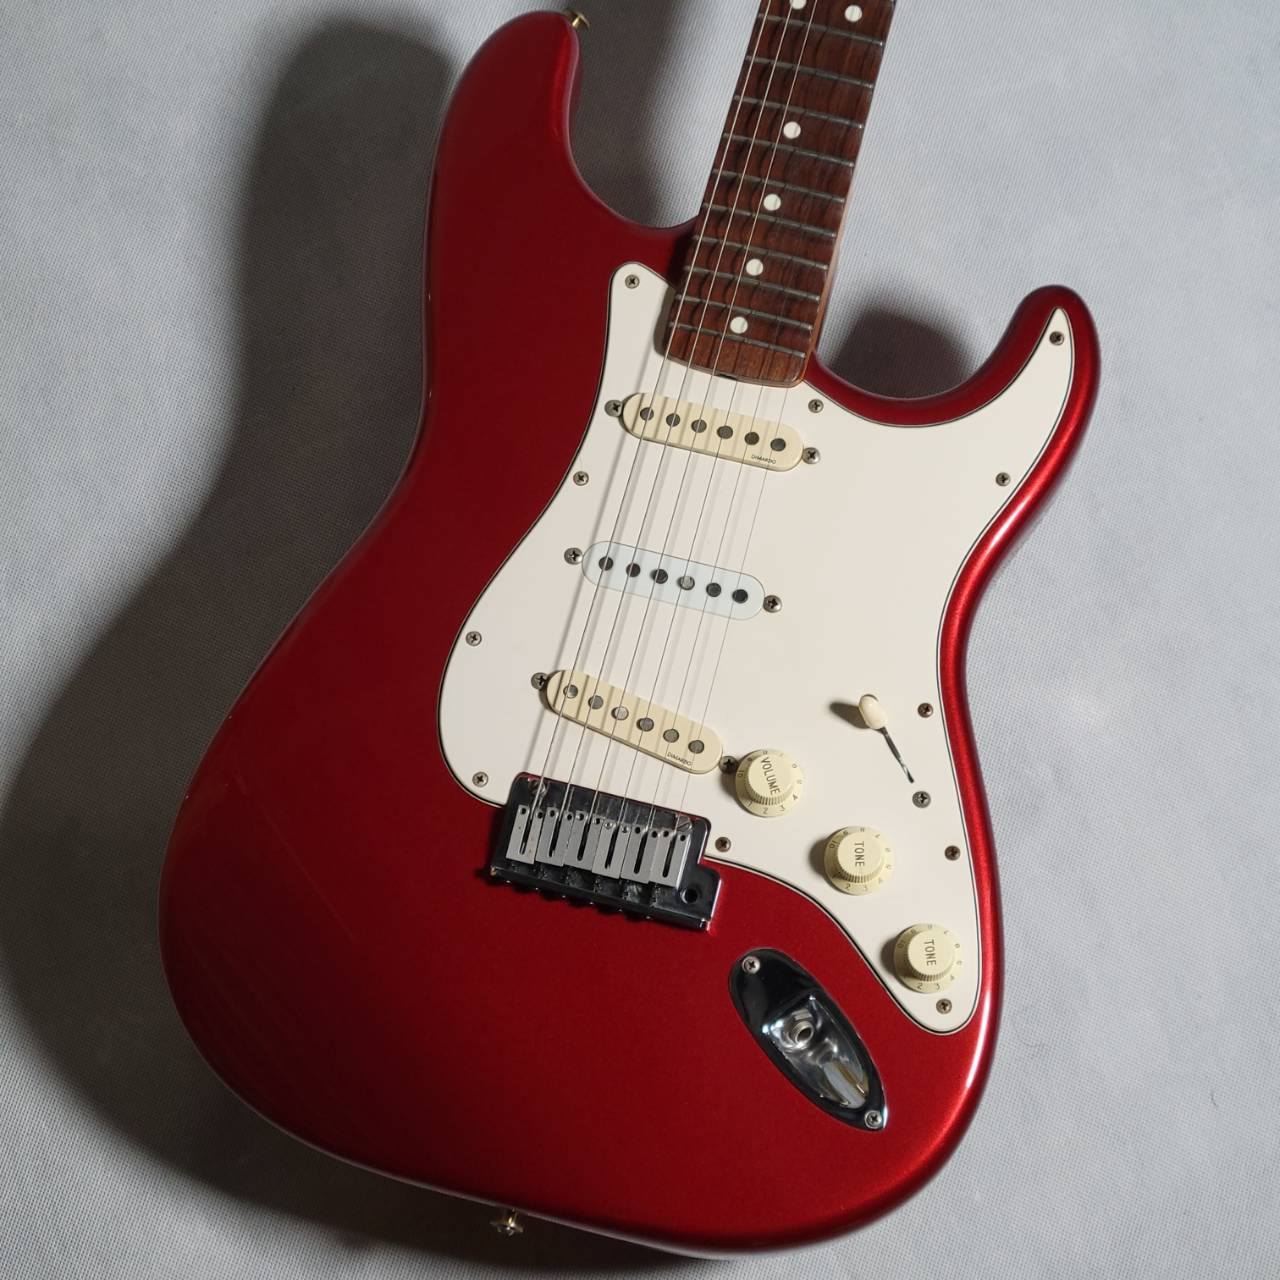 Fender（フェンダー）/Yngwie Malmsteen Stratocaster Candy Apple Red 【USED】エレクトリックギター【立川店】  | www.carmenundmelanie.at